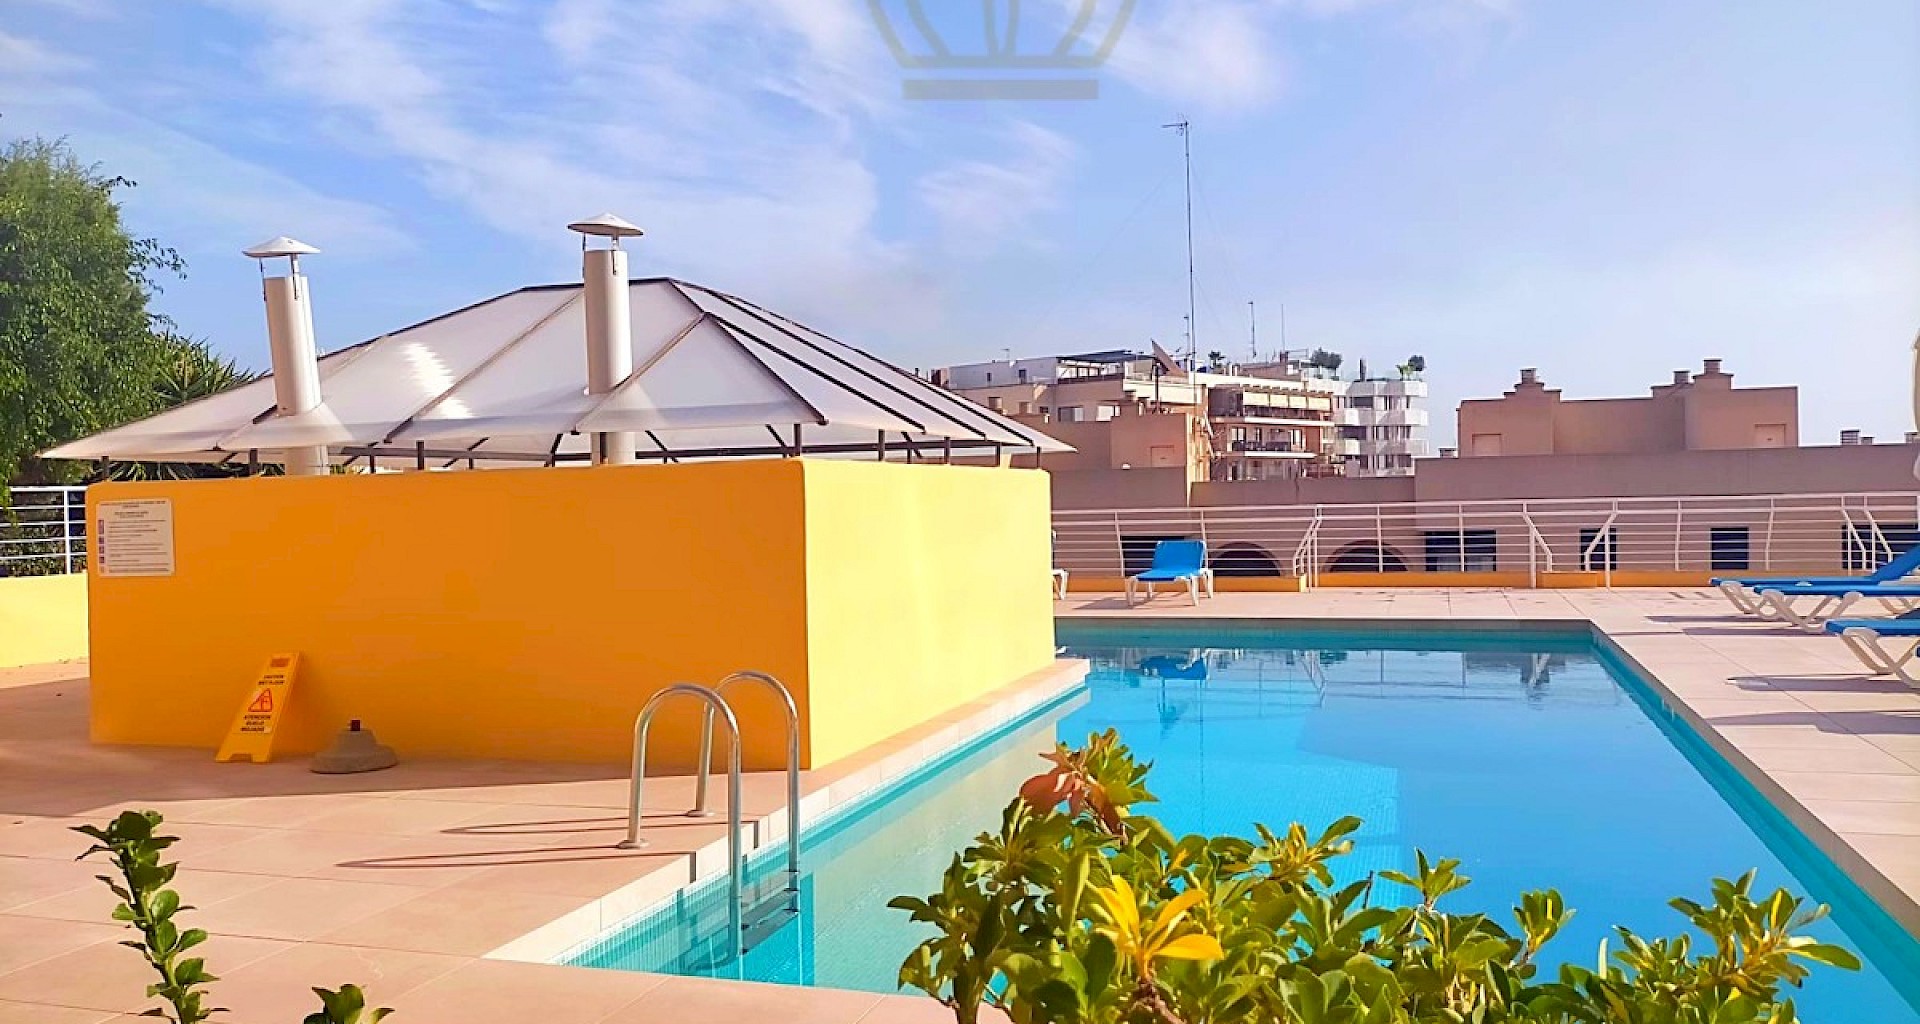 KROHN & LUEDEMANN Piso reformado en Palma, El Terreno con vistas al puerto y piscina comunitaria. City Apartment Palma de Mallorca 23